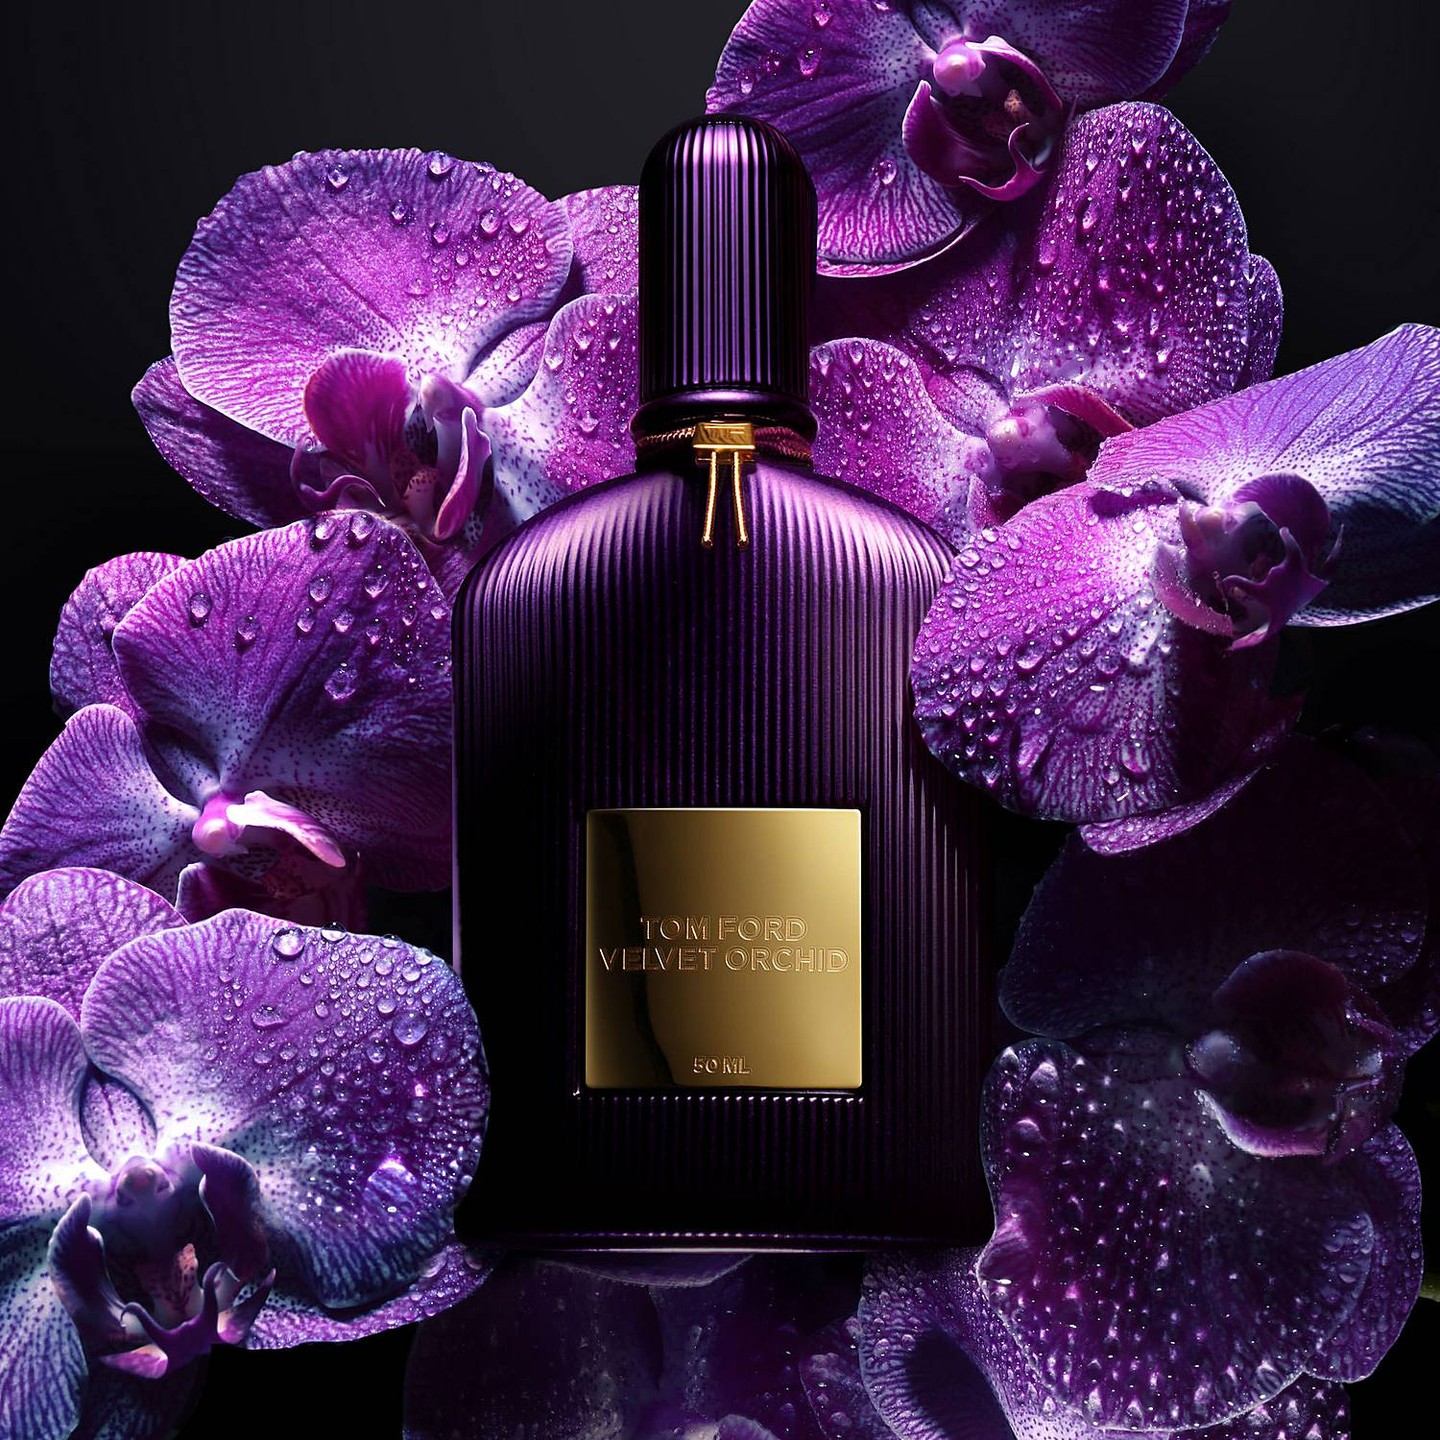 Velvet Orchid. Источник: Instagram